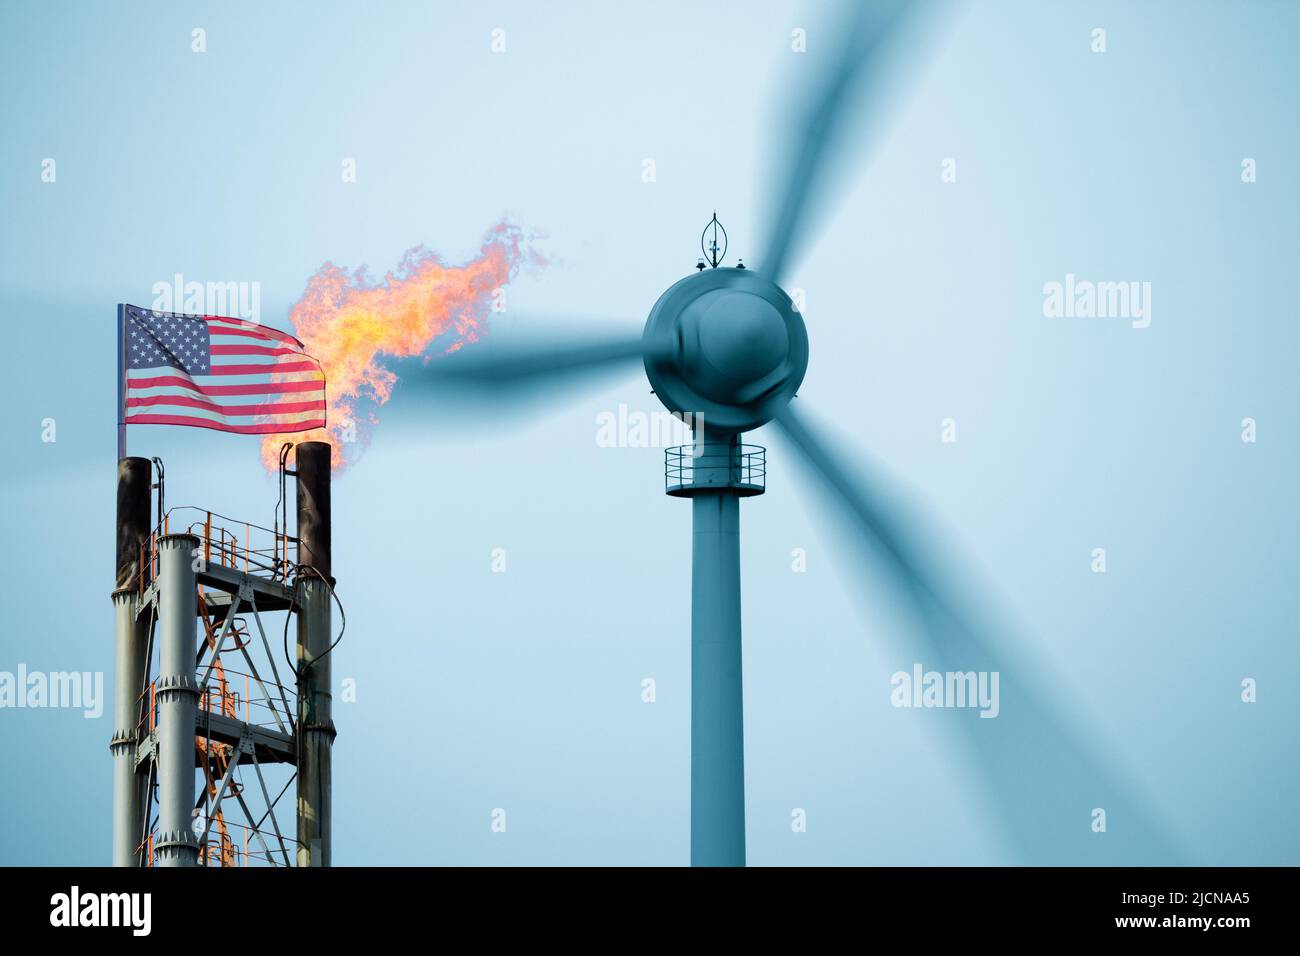 USA pulito, energia rinnovabile, combustibili fossili, gas, industria petrolifera, turbine eoliche, inflazione, economia, emissioni nette zero, riscaldamento globale, cambiamenti climatici.. Foto Stock